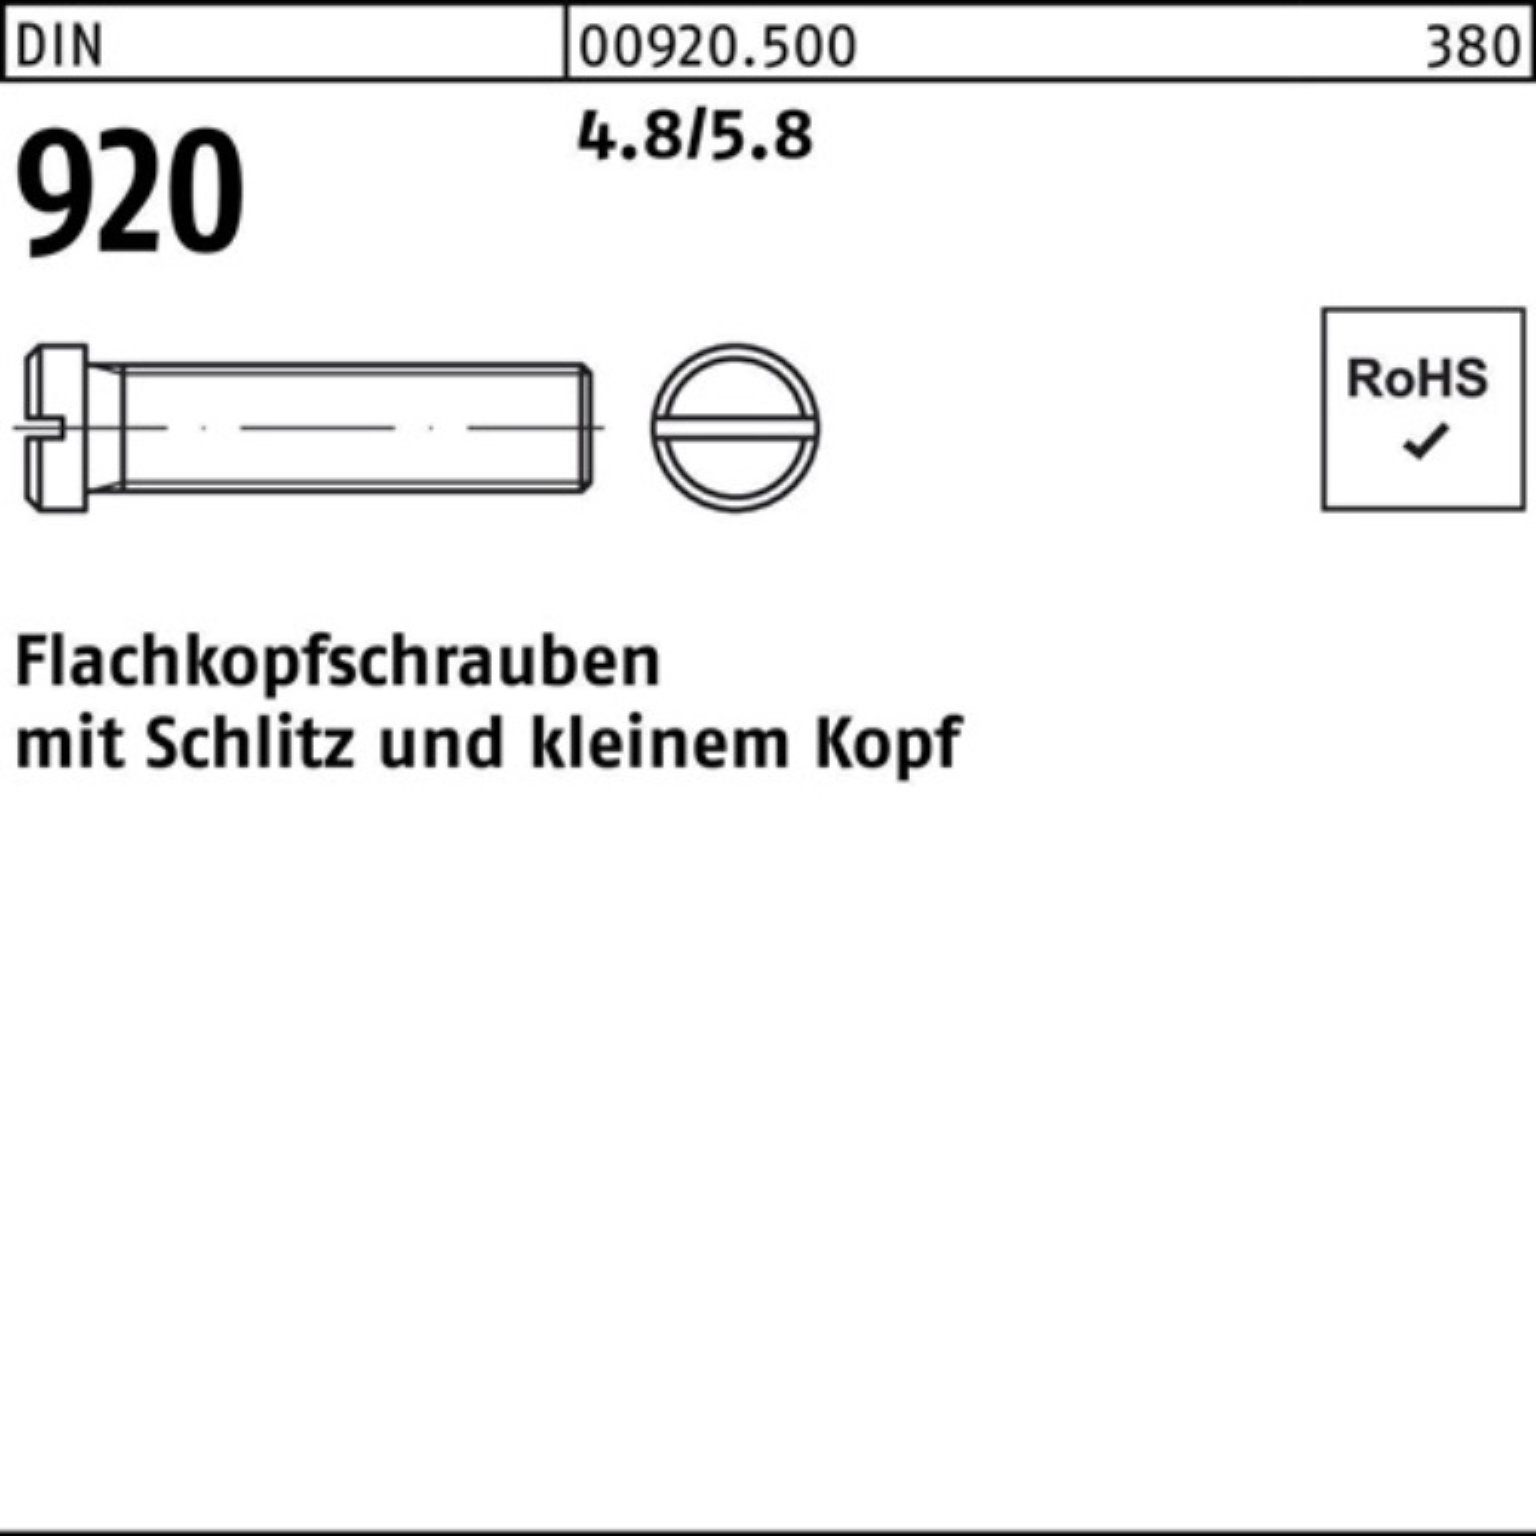 Reyher Schraube 100er Pack Flachkopfschraube 100 4.8/5.8 3 Stück 920 Schlitz DIN M3x